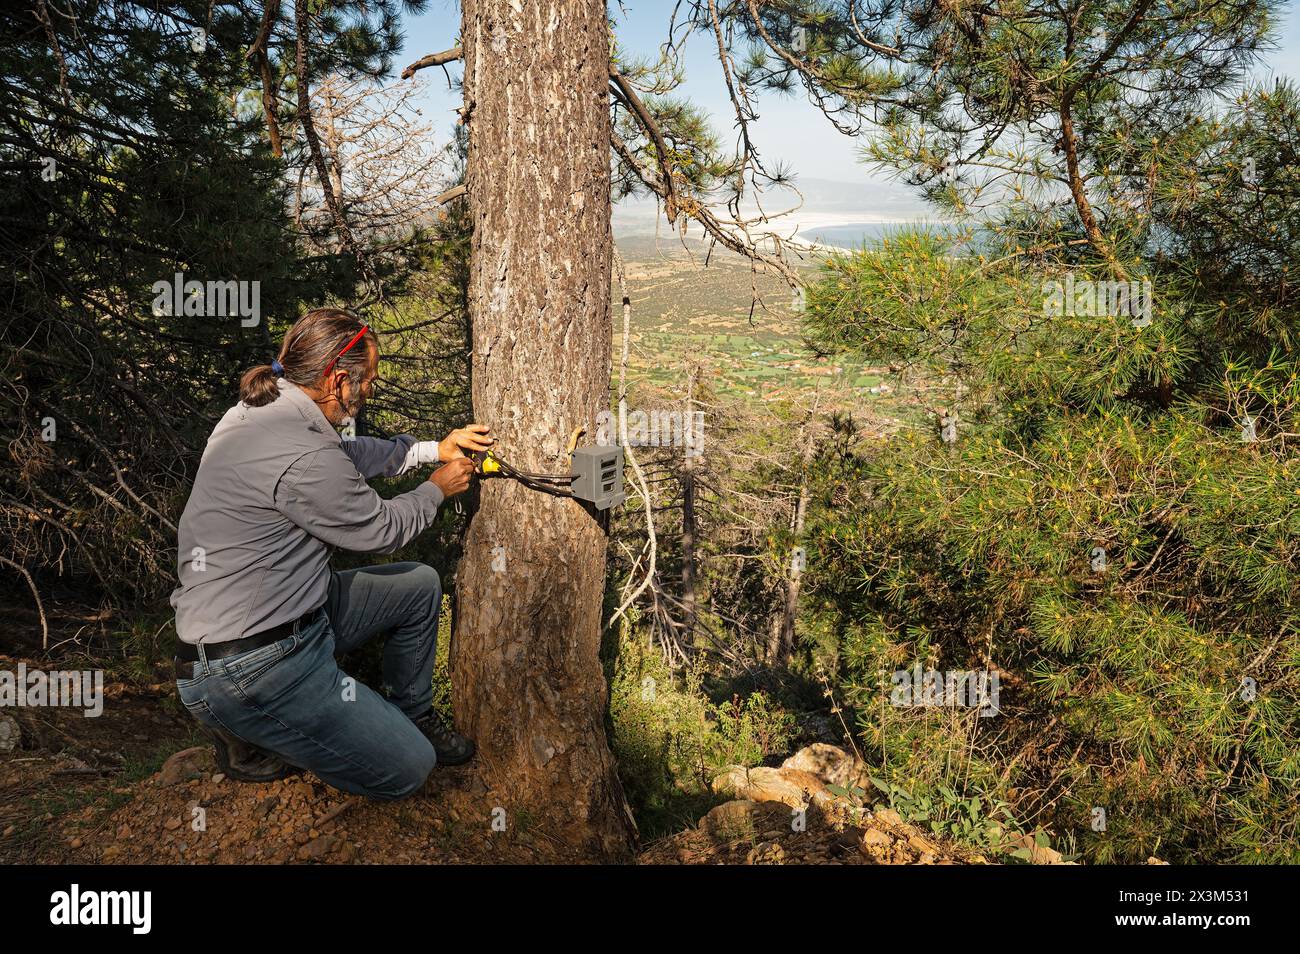 Un homme qui a placé un piège photo dans un arbre pour filmer des animaux sauvages. Banque D'Images